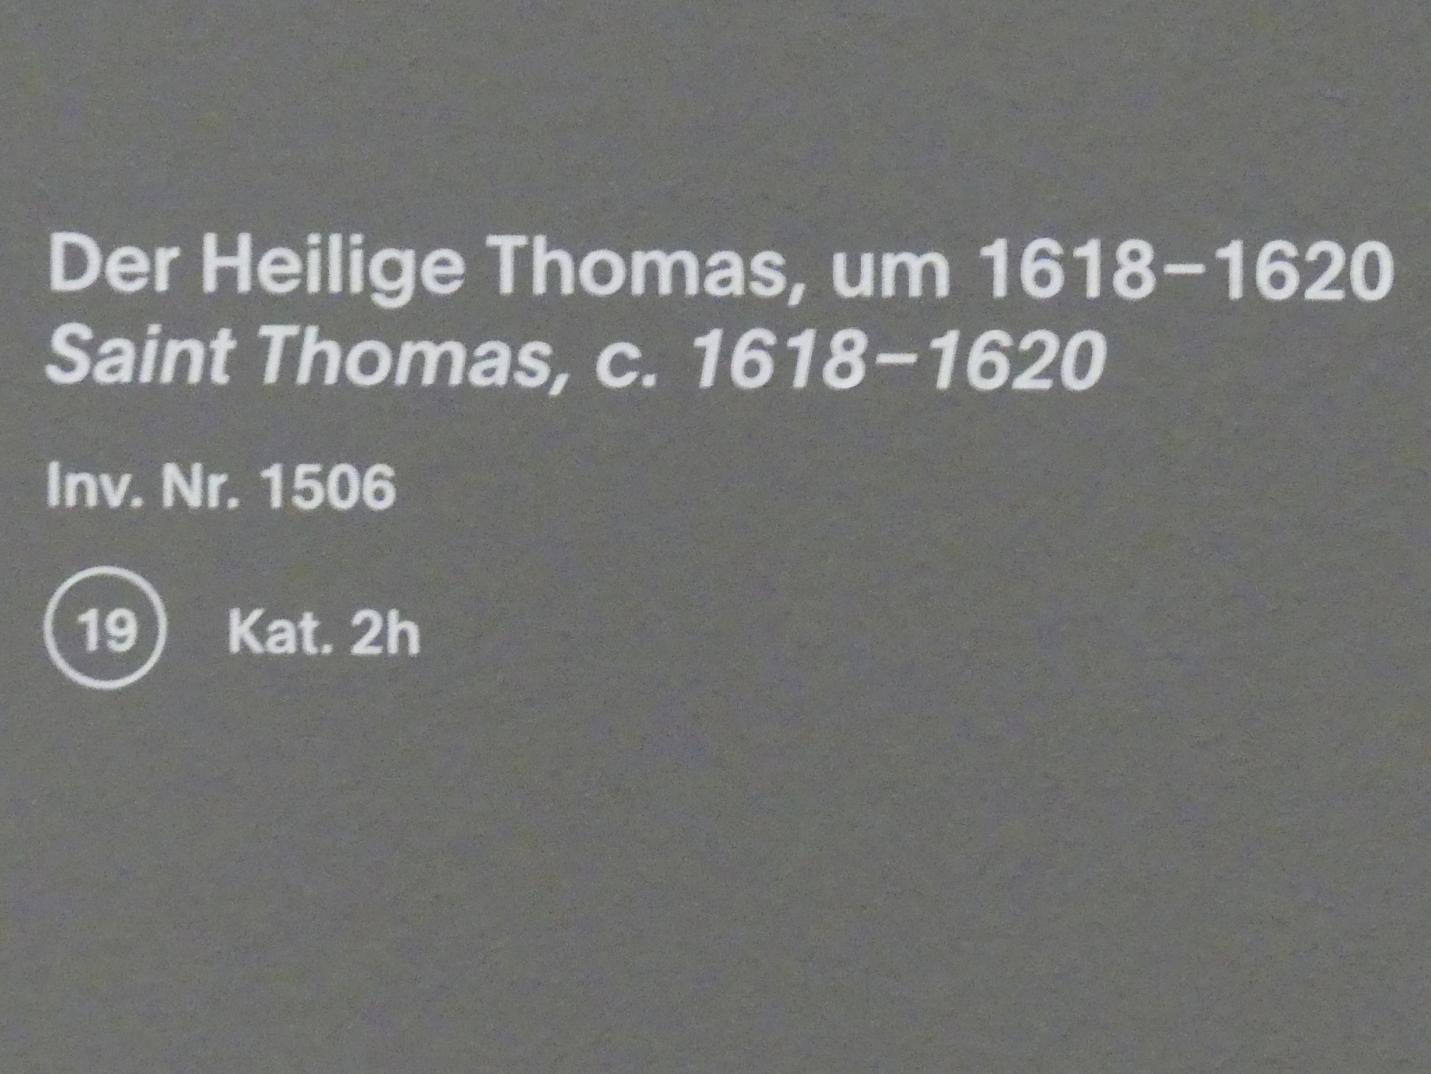 Anthonis (Anton) van Dyck (Werkstatt) (1619–1636), Der Heilige Thomas, München, Alte Pinakothek, Ausstellung "Van Dyck" vom 25.10.2019-02.02.2020, Die Anfänge - 2, um 1618–1620, Bild 2/2